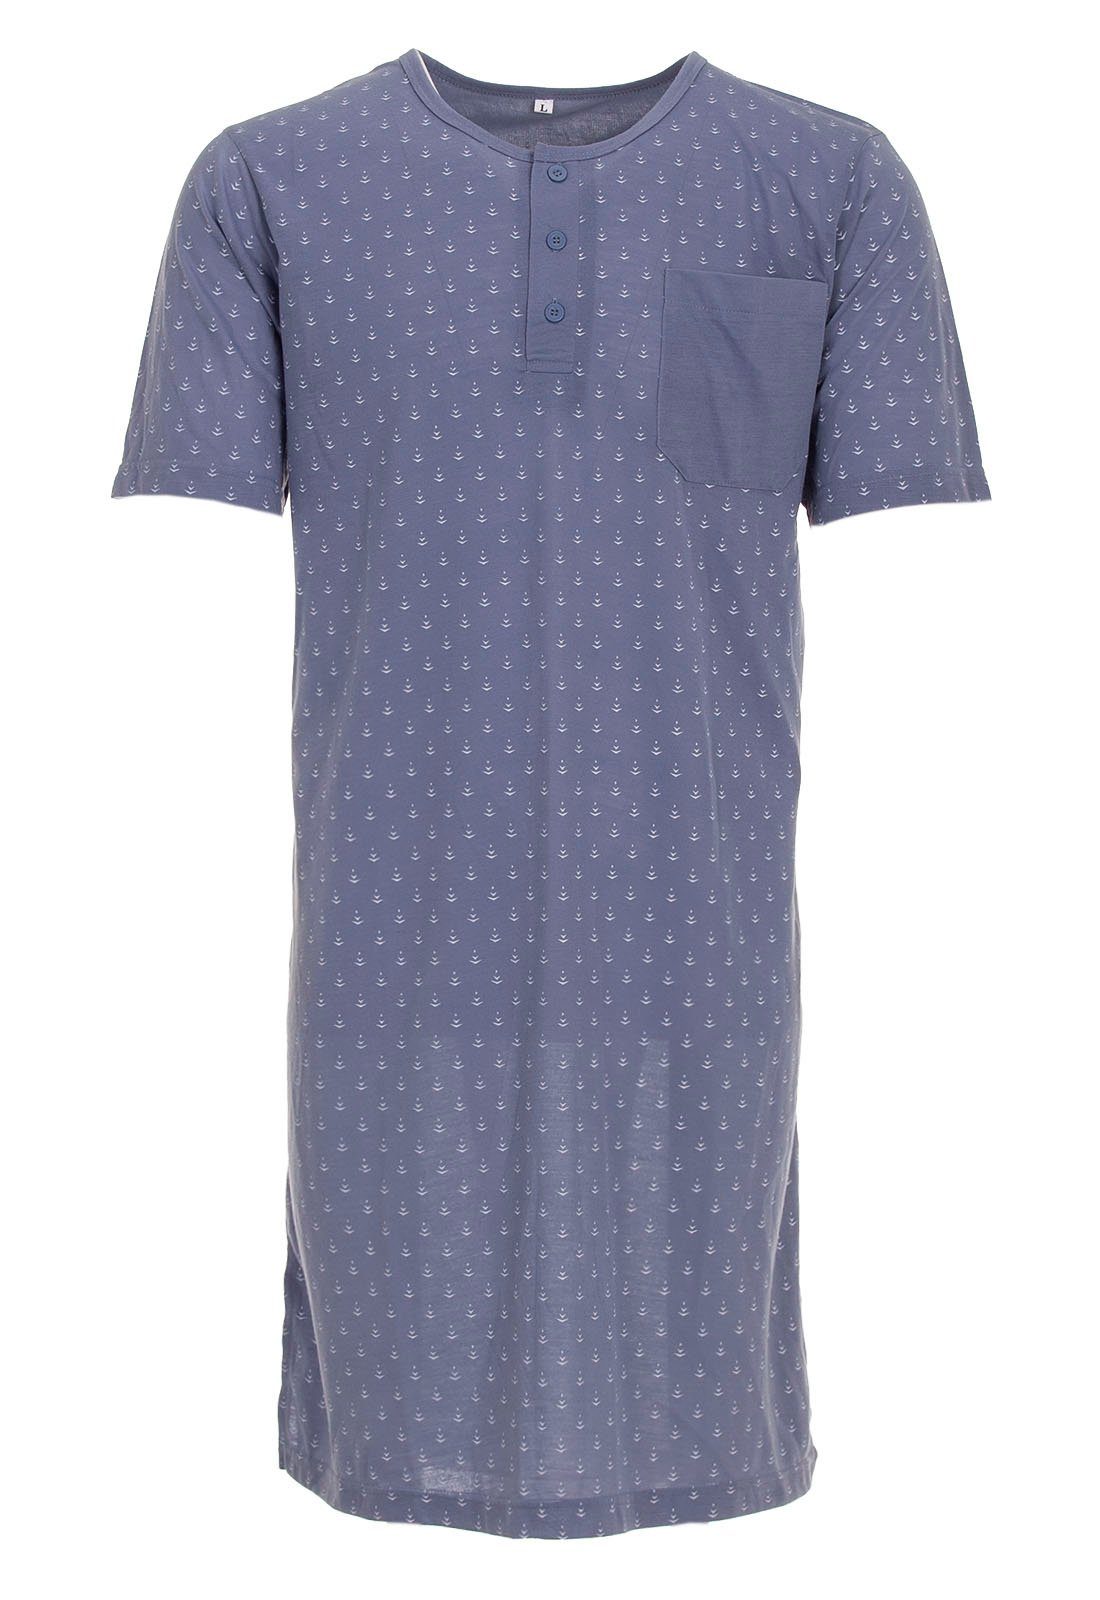 Lucky Nachthemd Nachthemd Kurzarm - Pfeil graublau